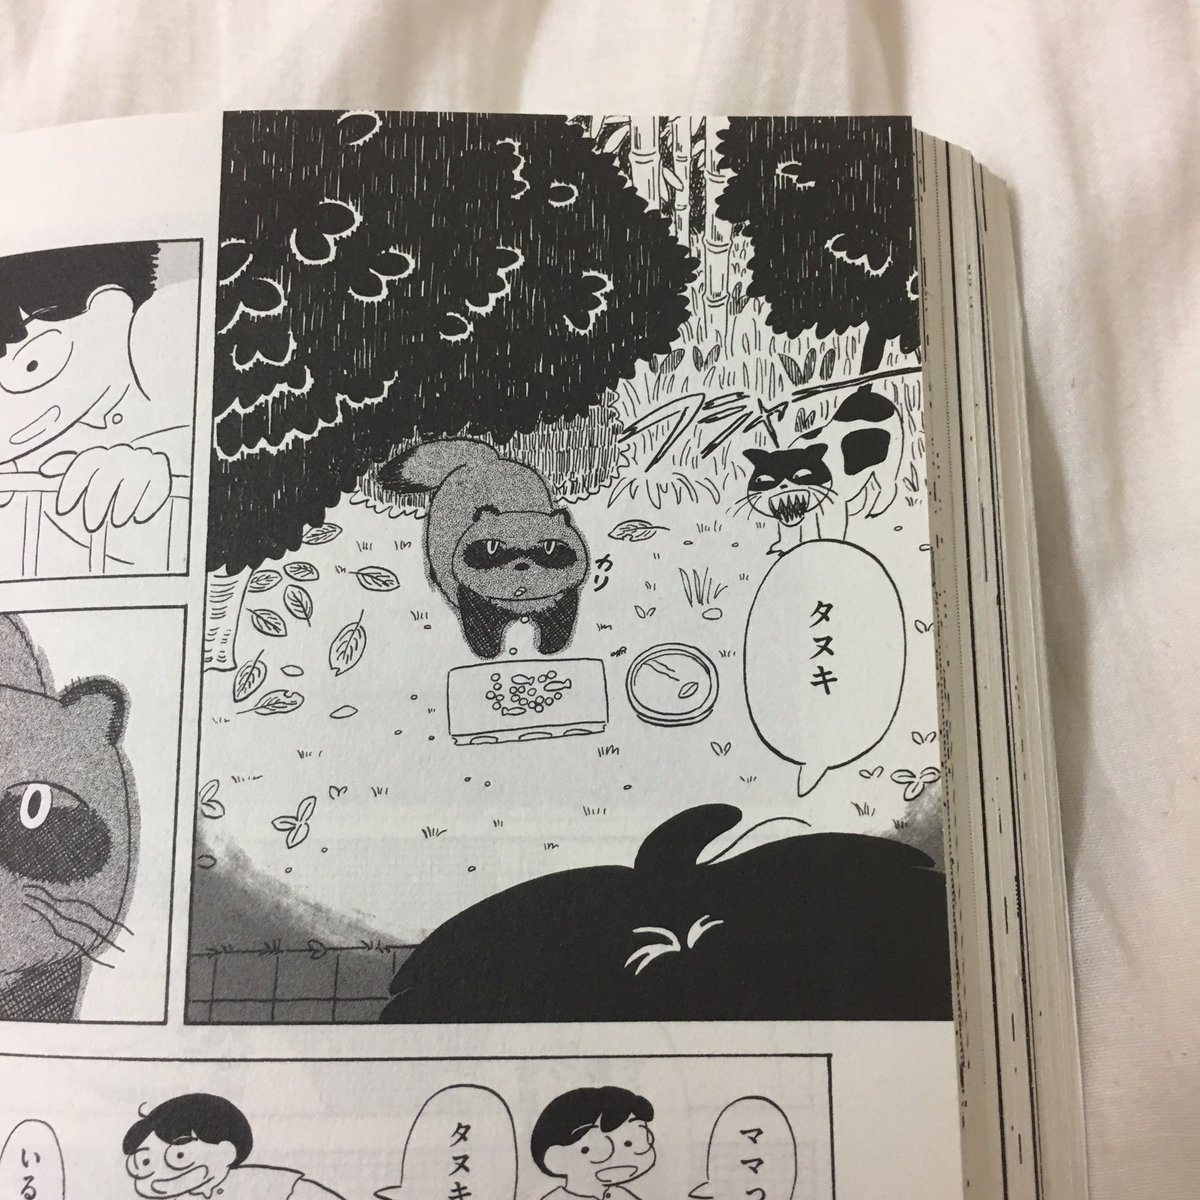 発売中の『アックス』に載ってる世良田波波さんの短編がメチャメチャ面白いのですが、その1コマ、タヌキとネコの夢みたいに可愛い攻防戦が、なんとこの間まで住んでいた家の庭で毎日繰り広げられていたのです! 